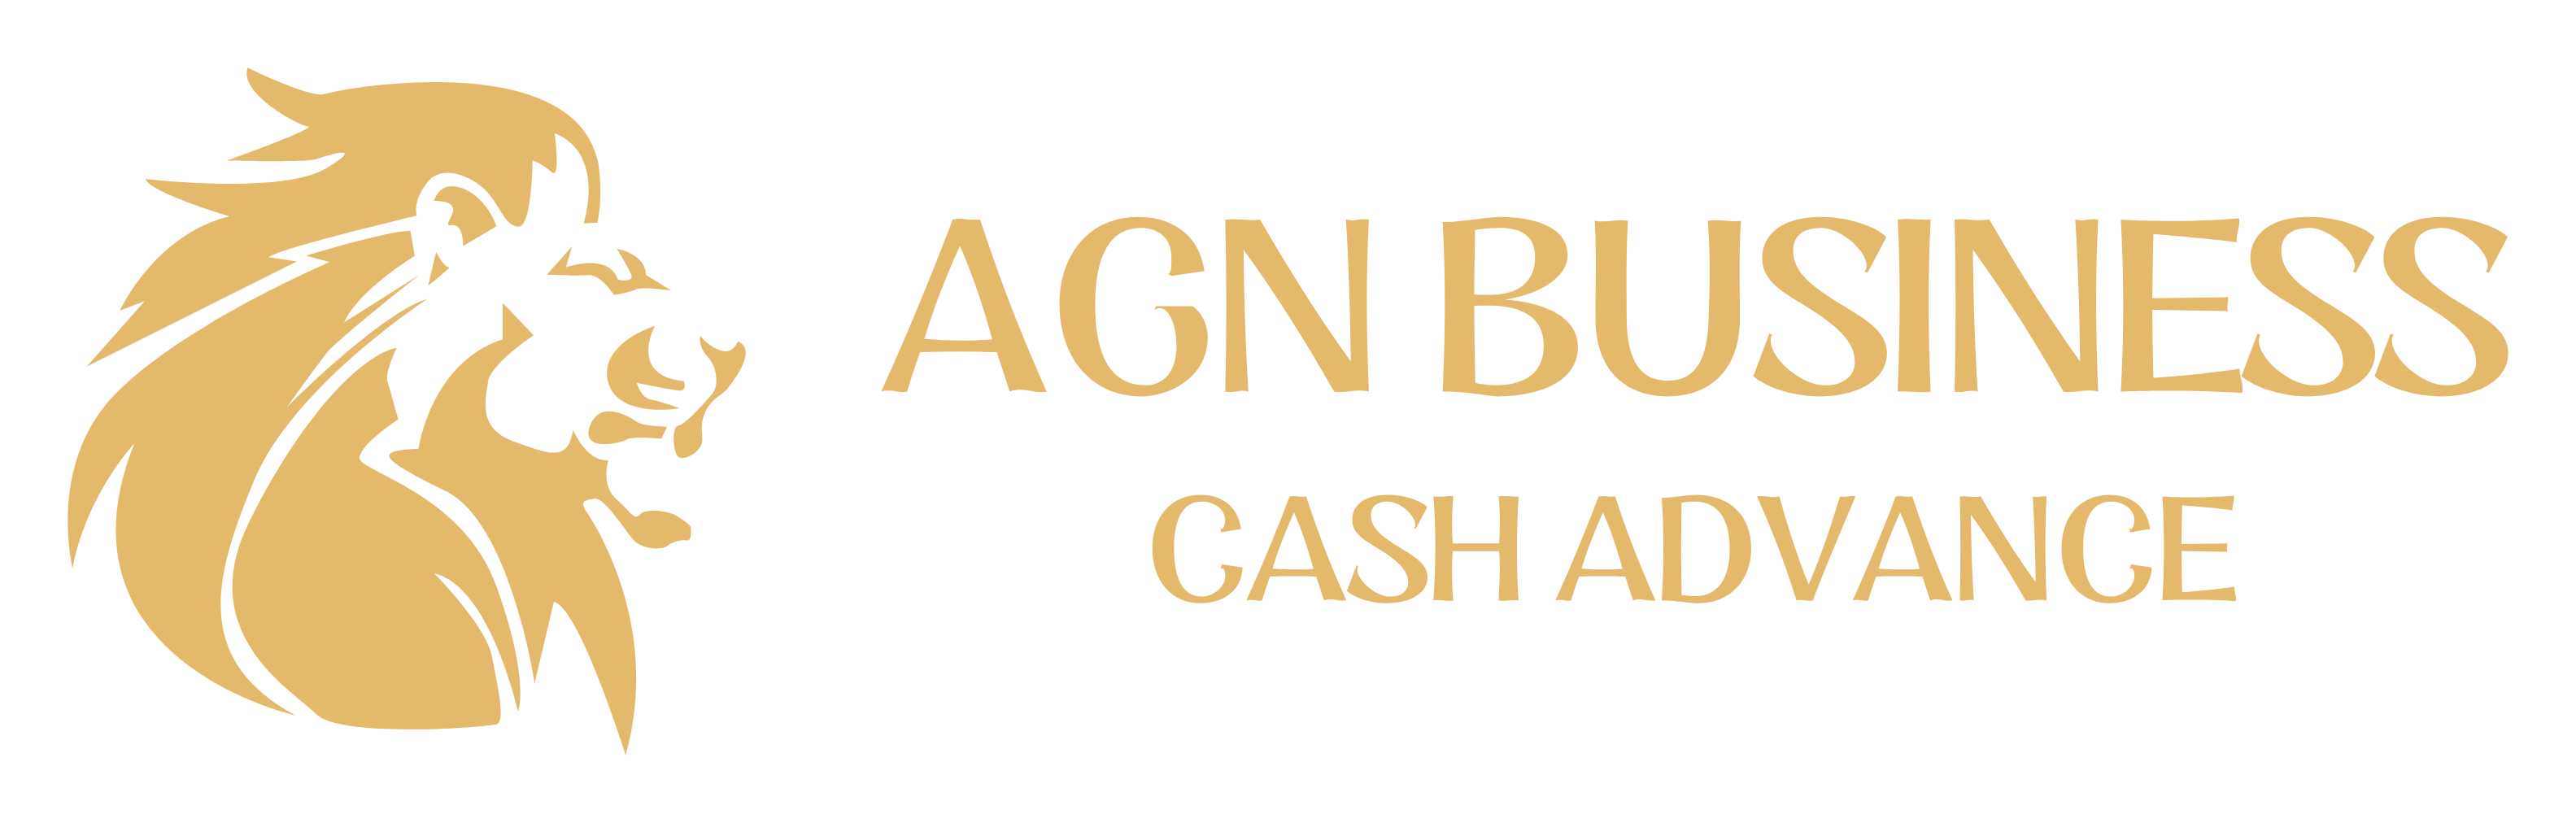 agn business cash advance